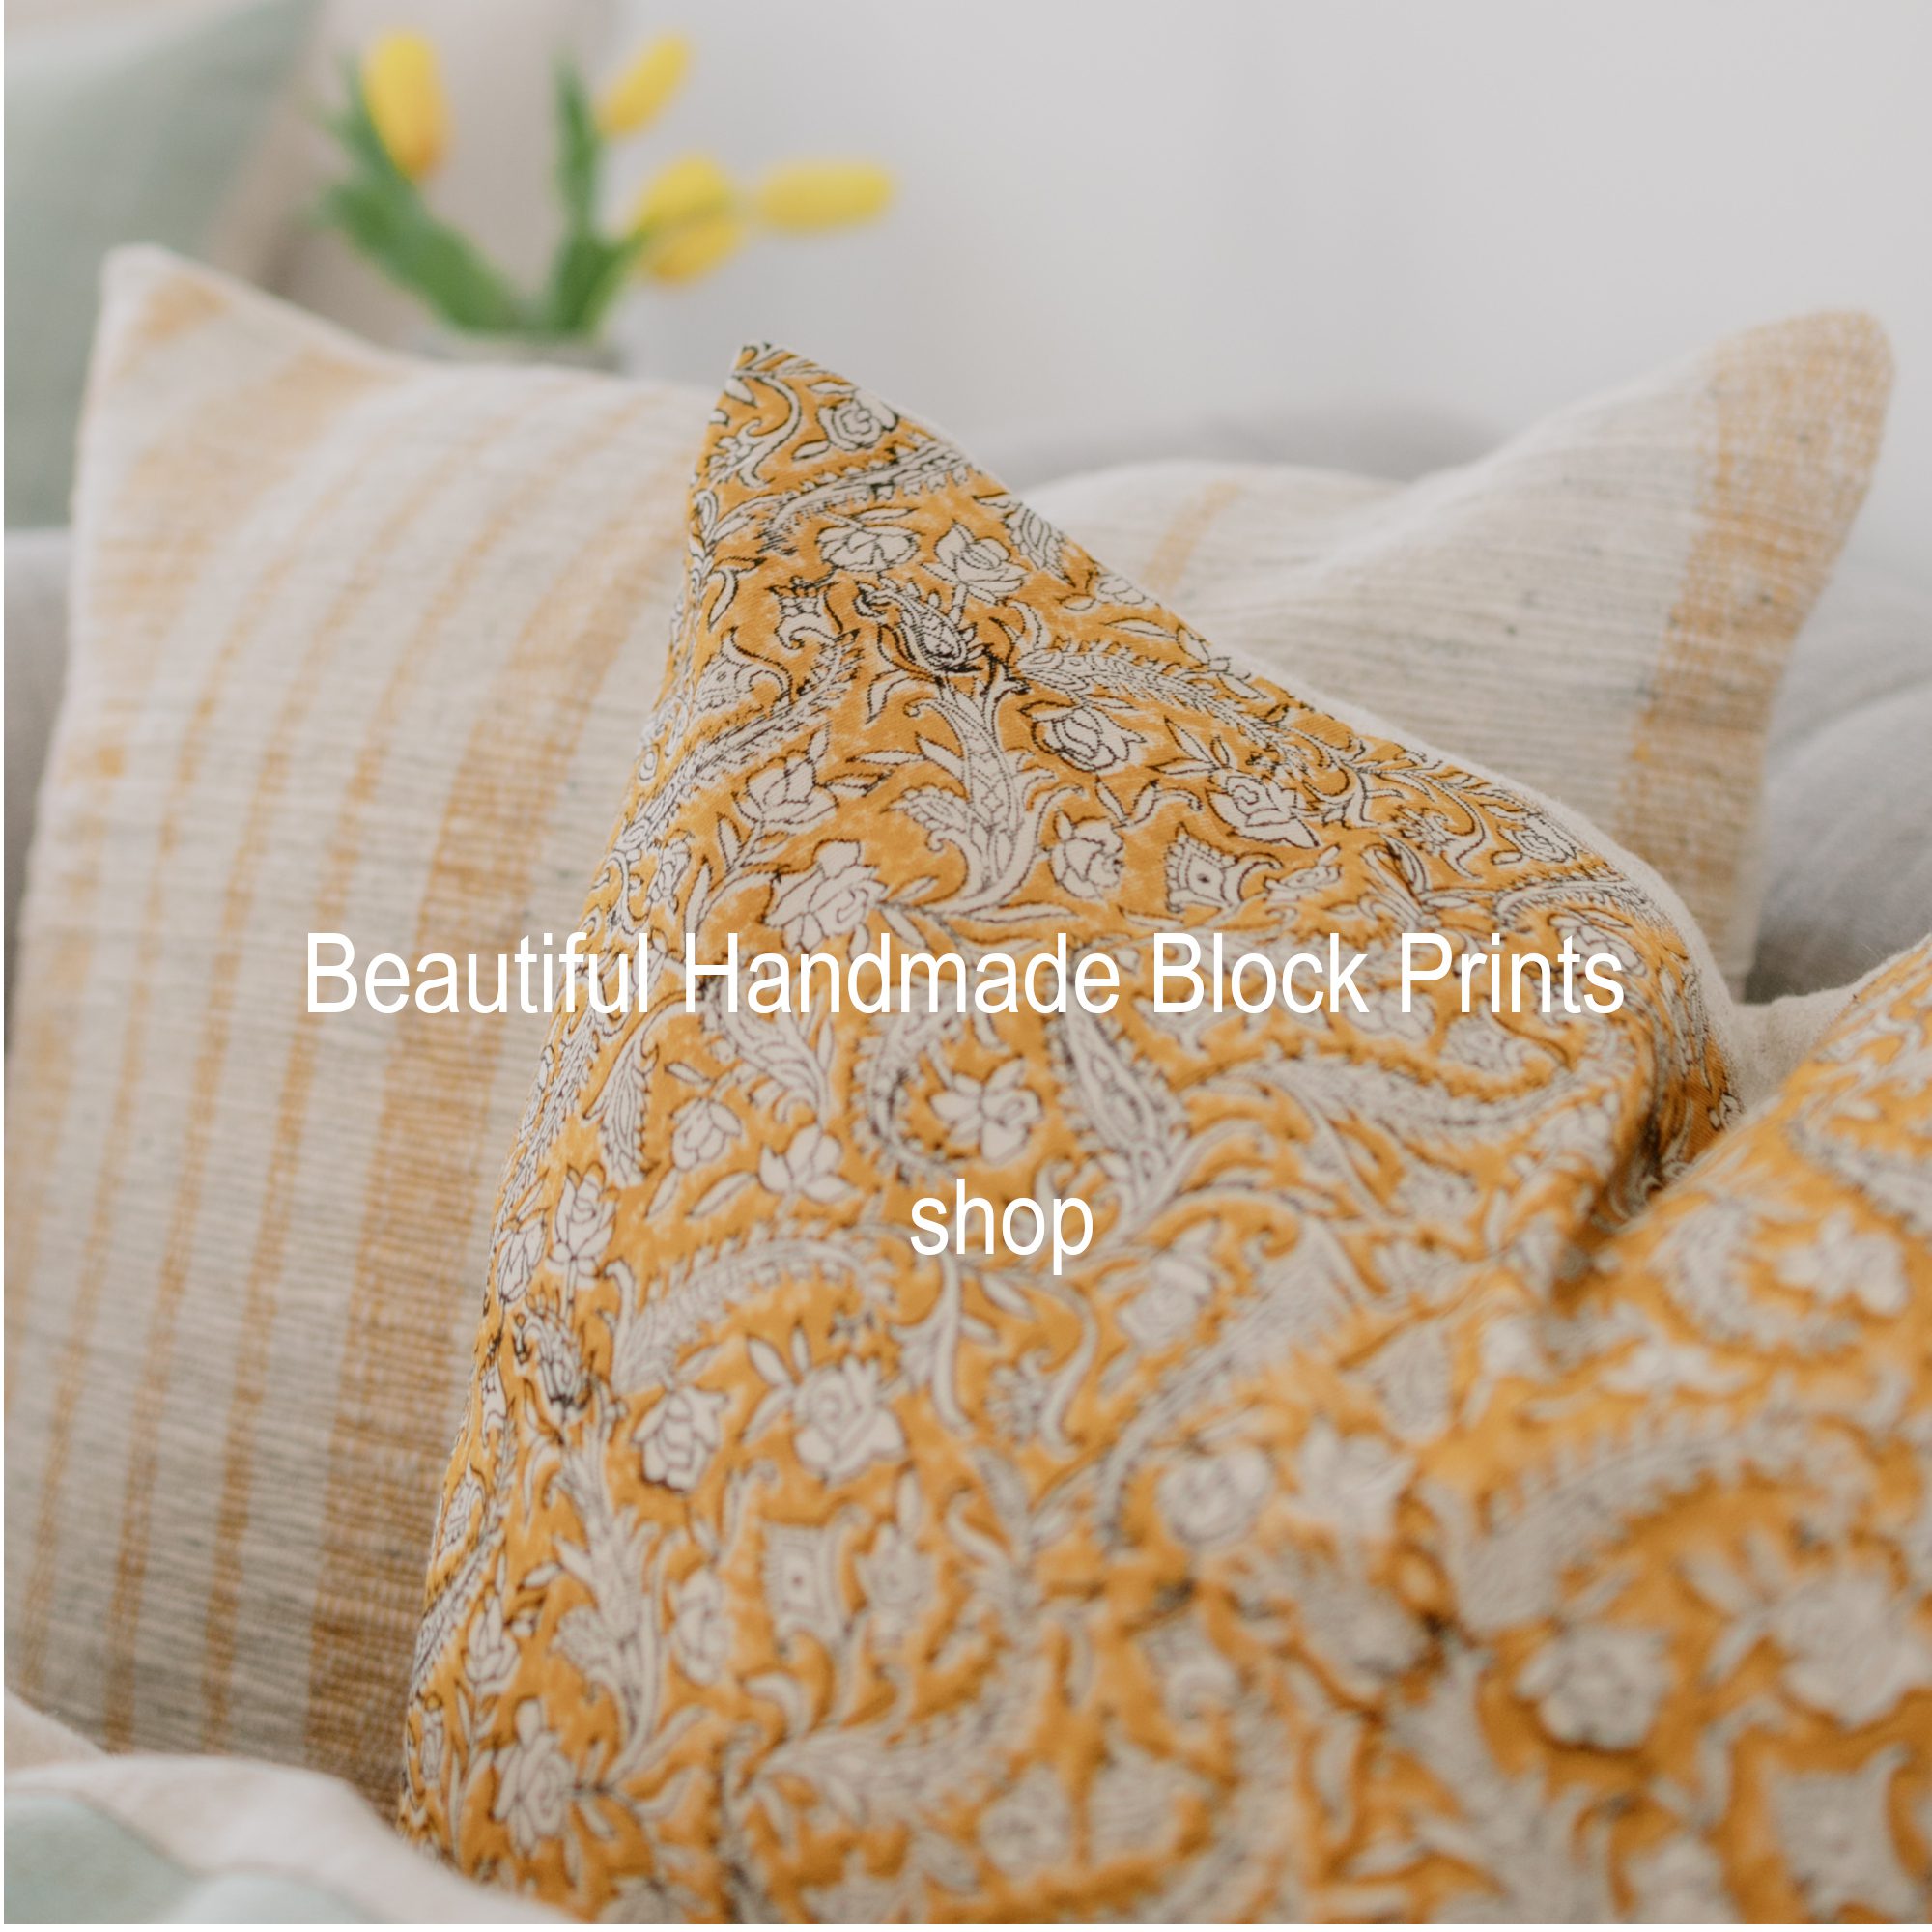 Handmade Block Print Pillows